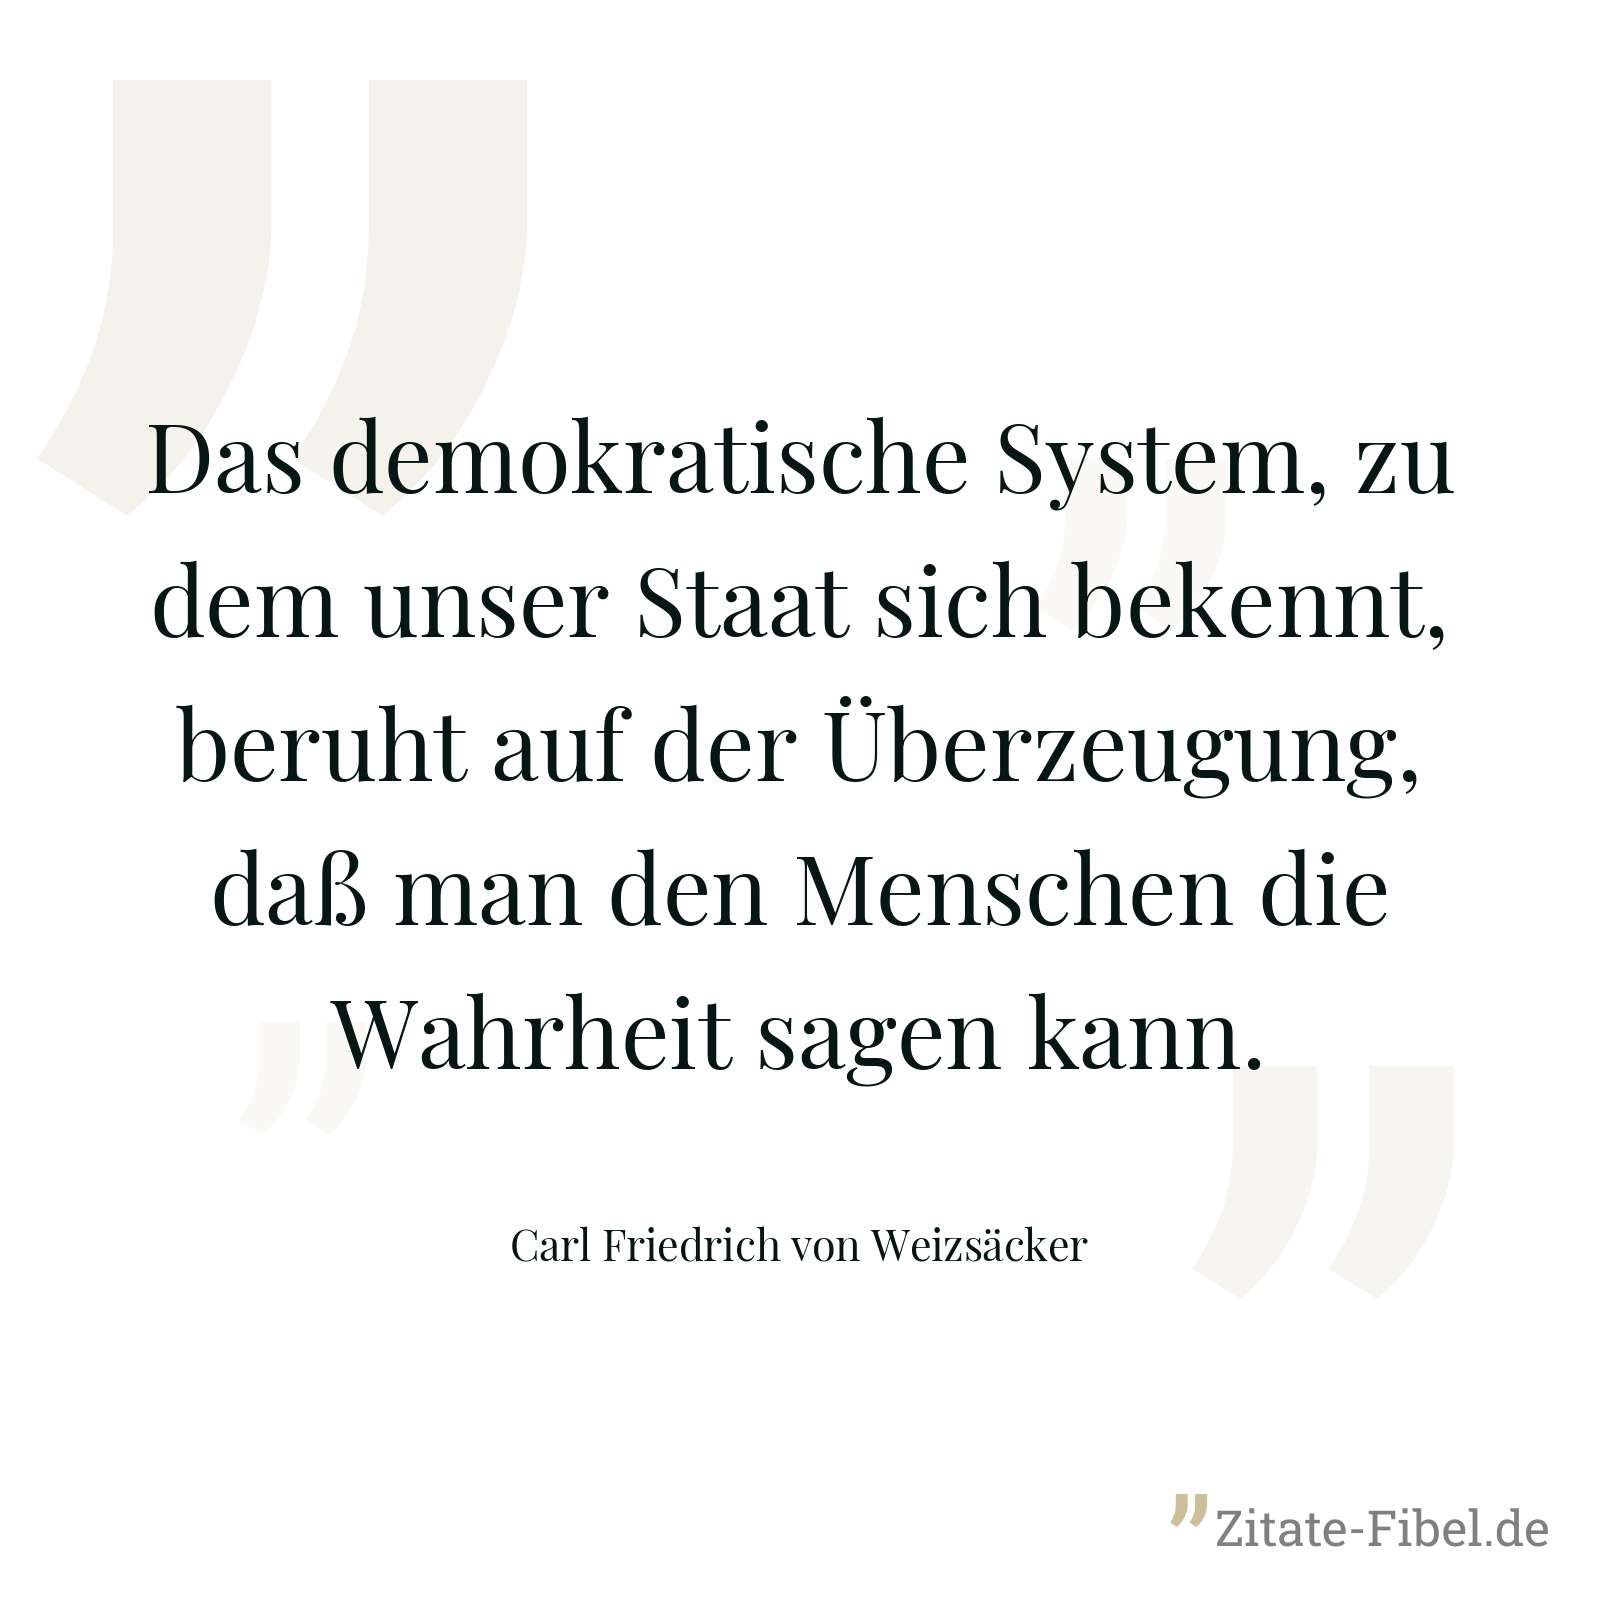 Das demokratische System, zu dem unser Staat sich bekennt, beruht auf der Überzeugung, daß man den Menschen die Wahrheit sagen kann. - Carl Friedrich von Weizsäcker